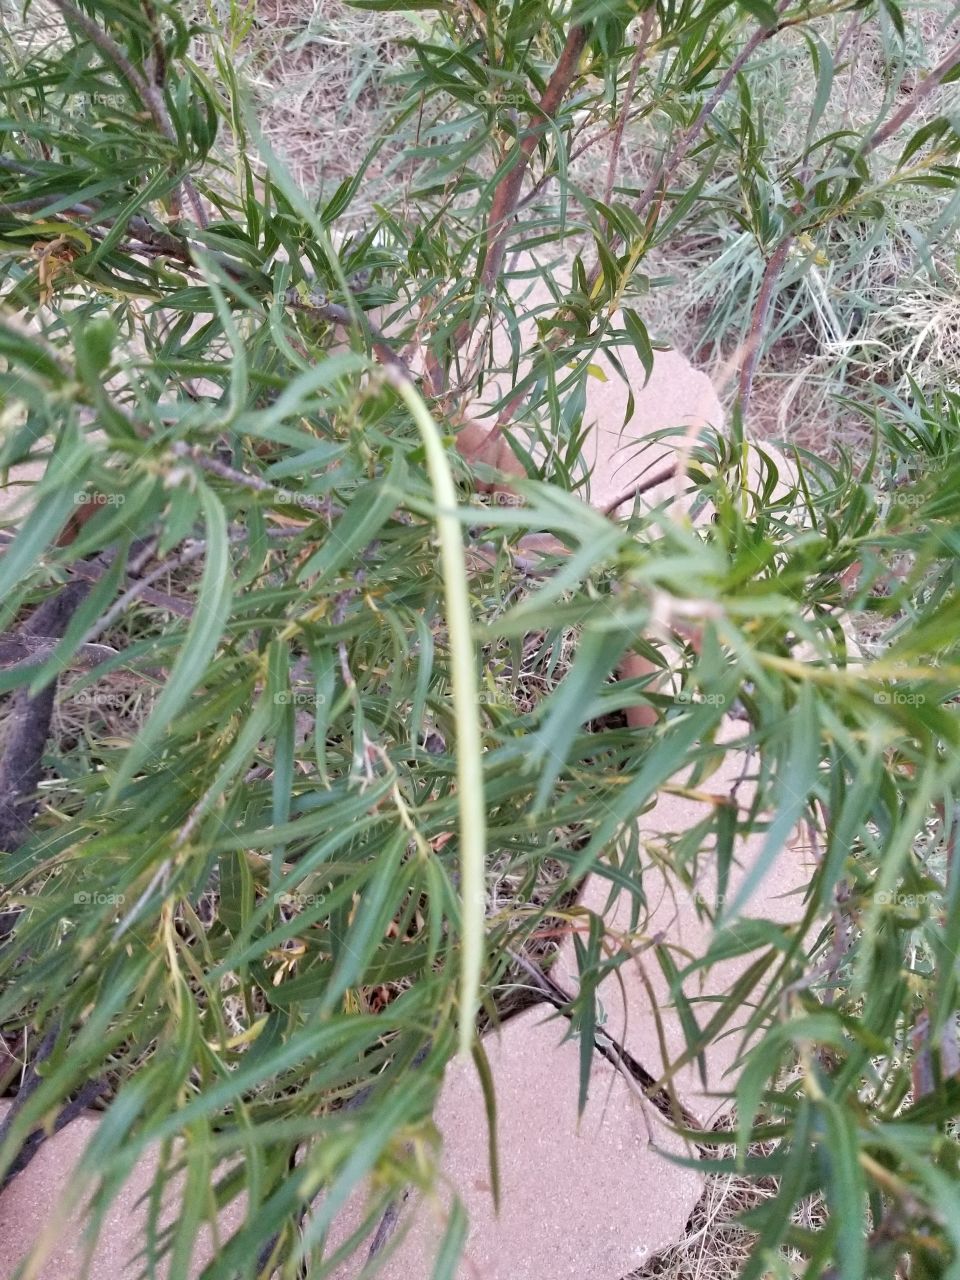 Desert Willow seed pod